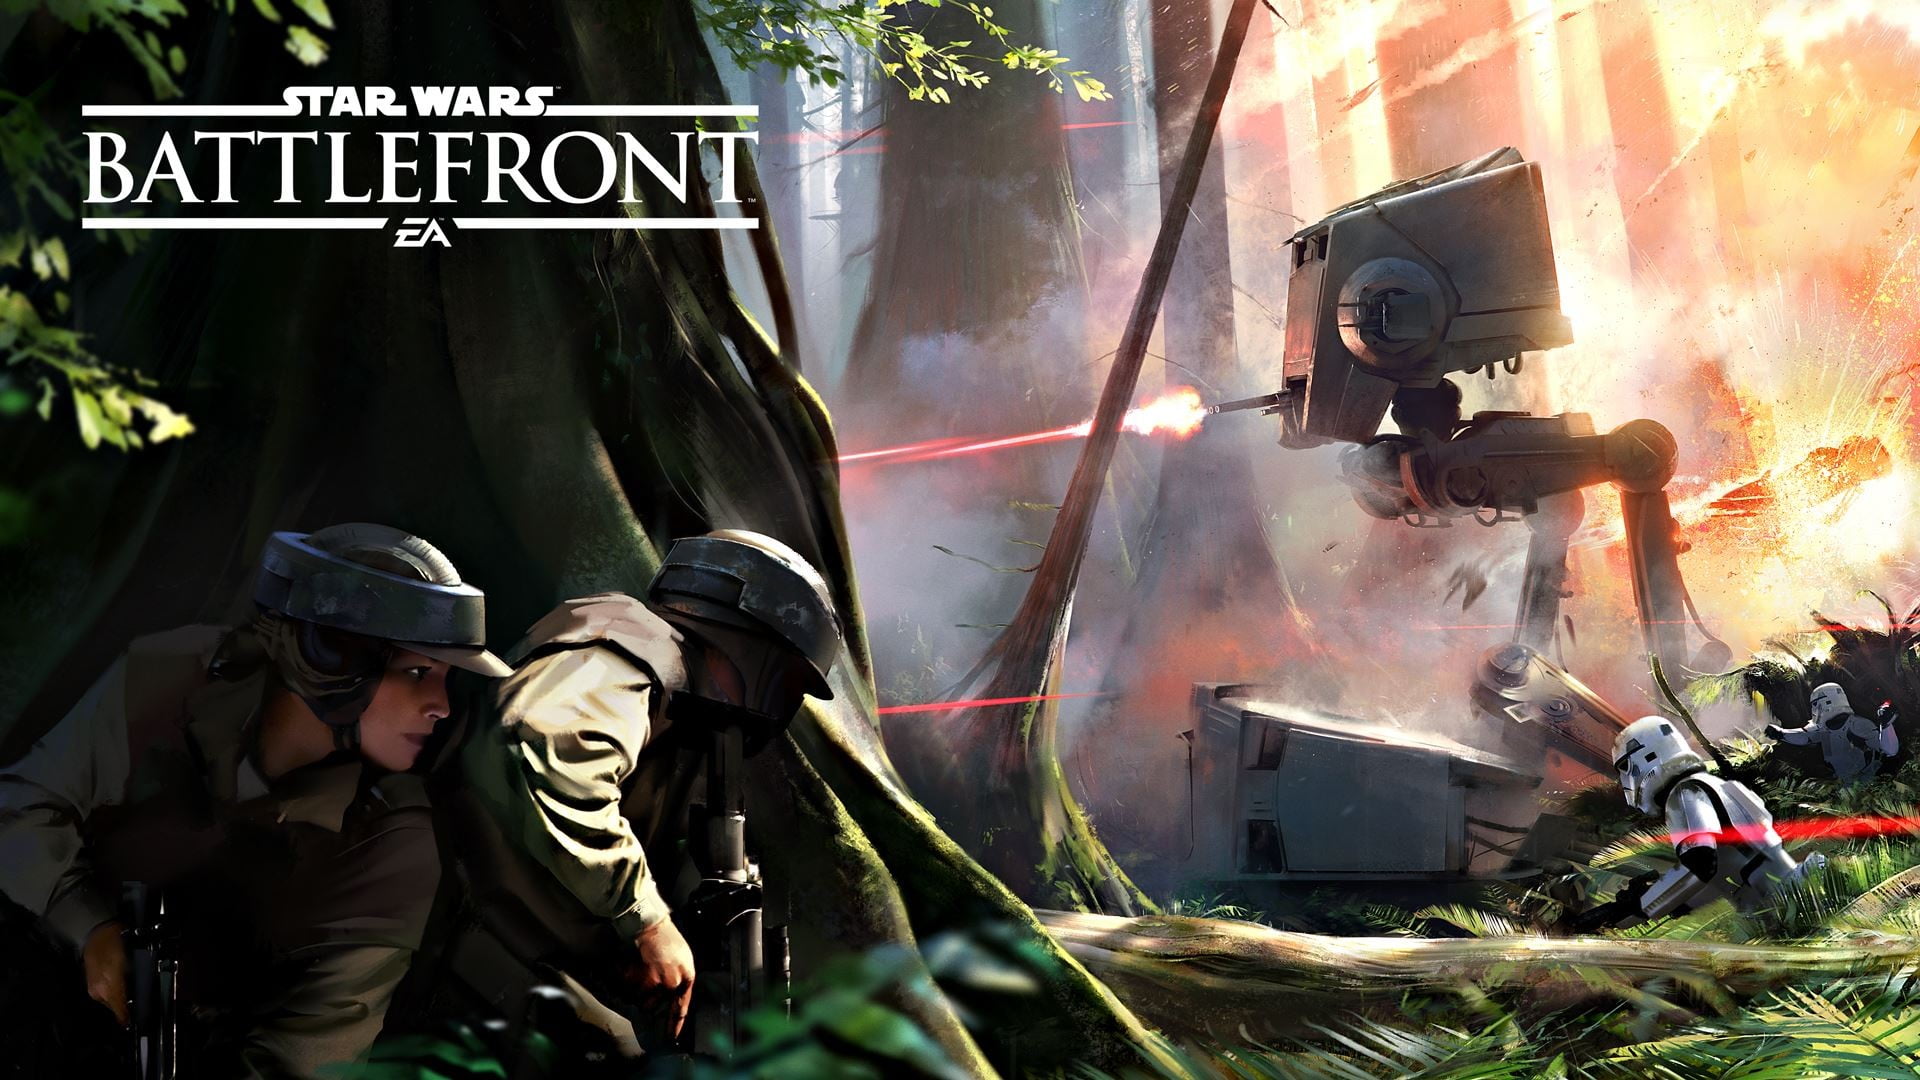 Star Wars Battlefront poster, Star Wars: Battlefront, Endor, AT-ST